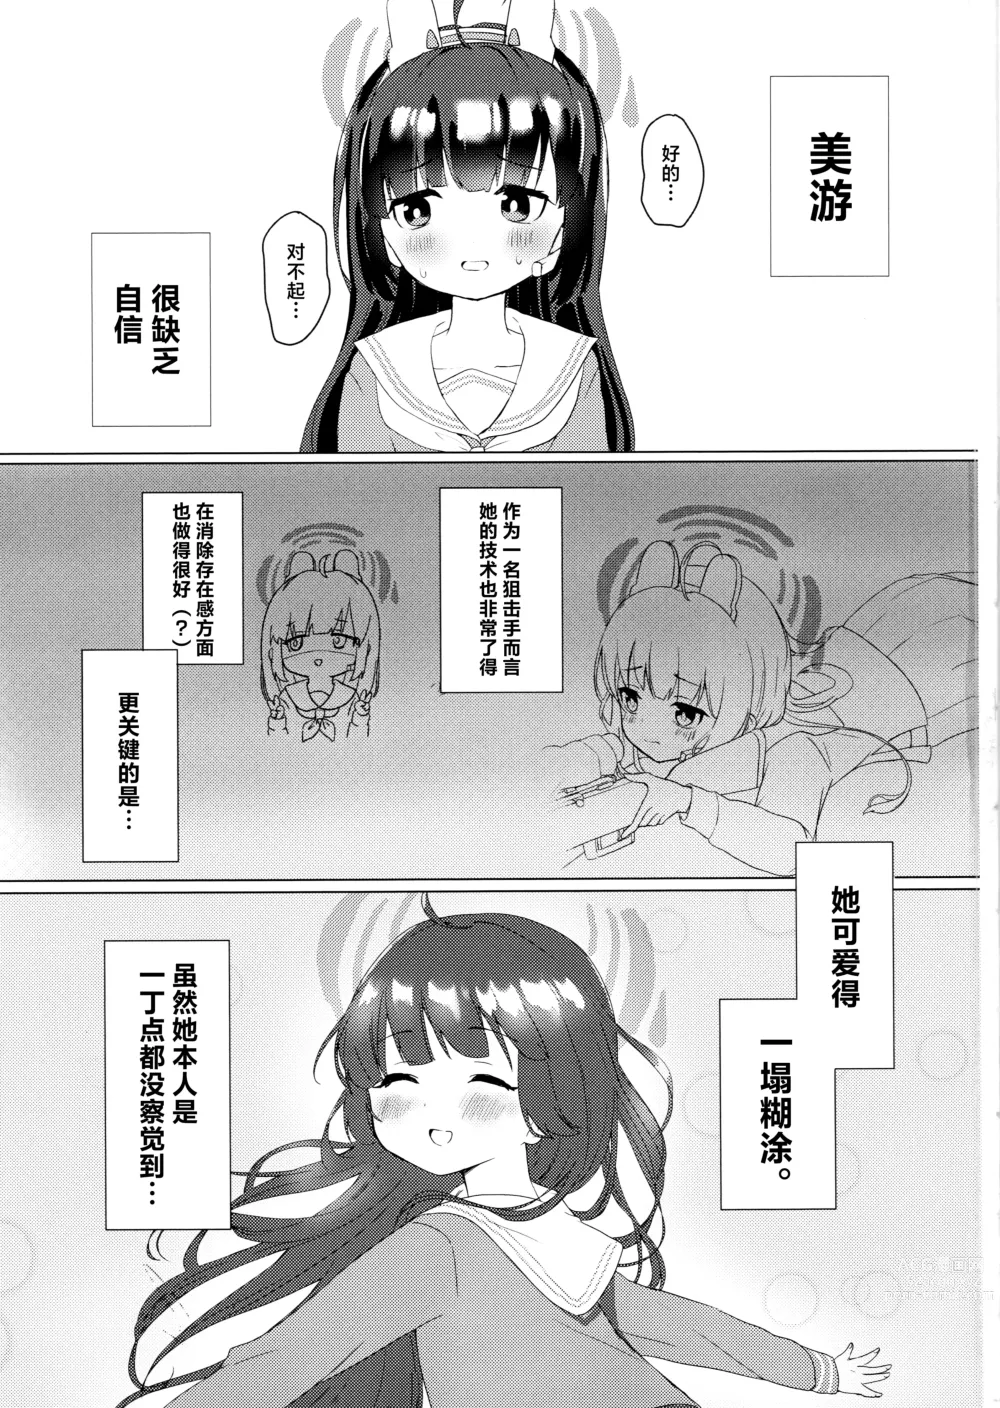 Page 2 of doujinshi Kasumizawa Miyu o Amayakashitai!